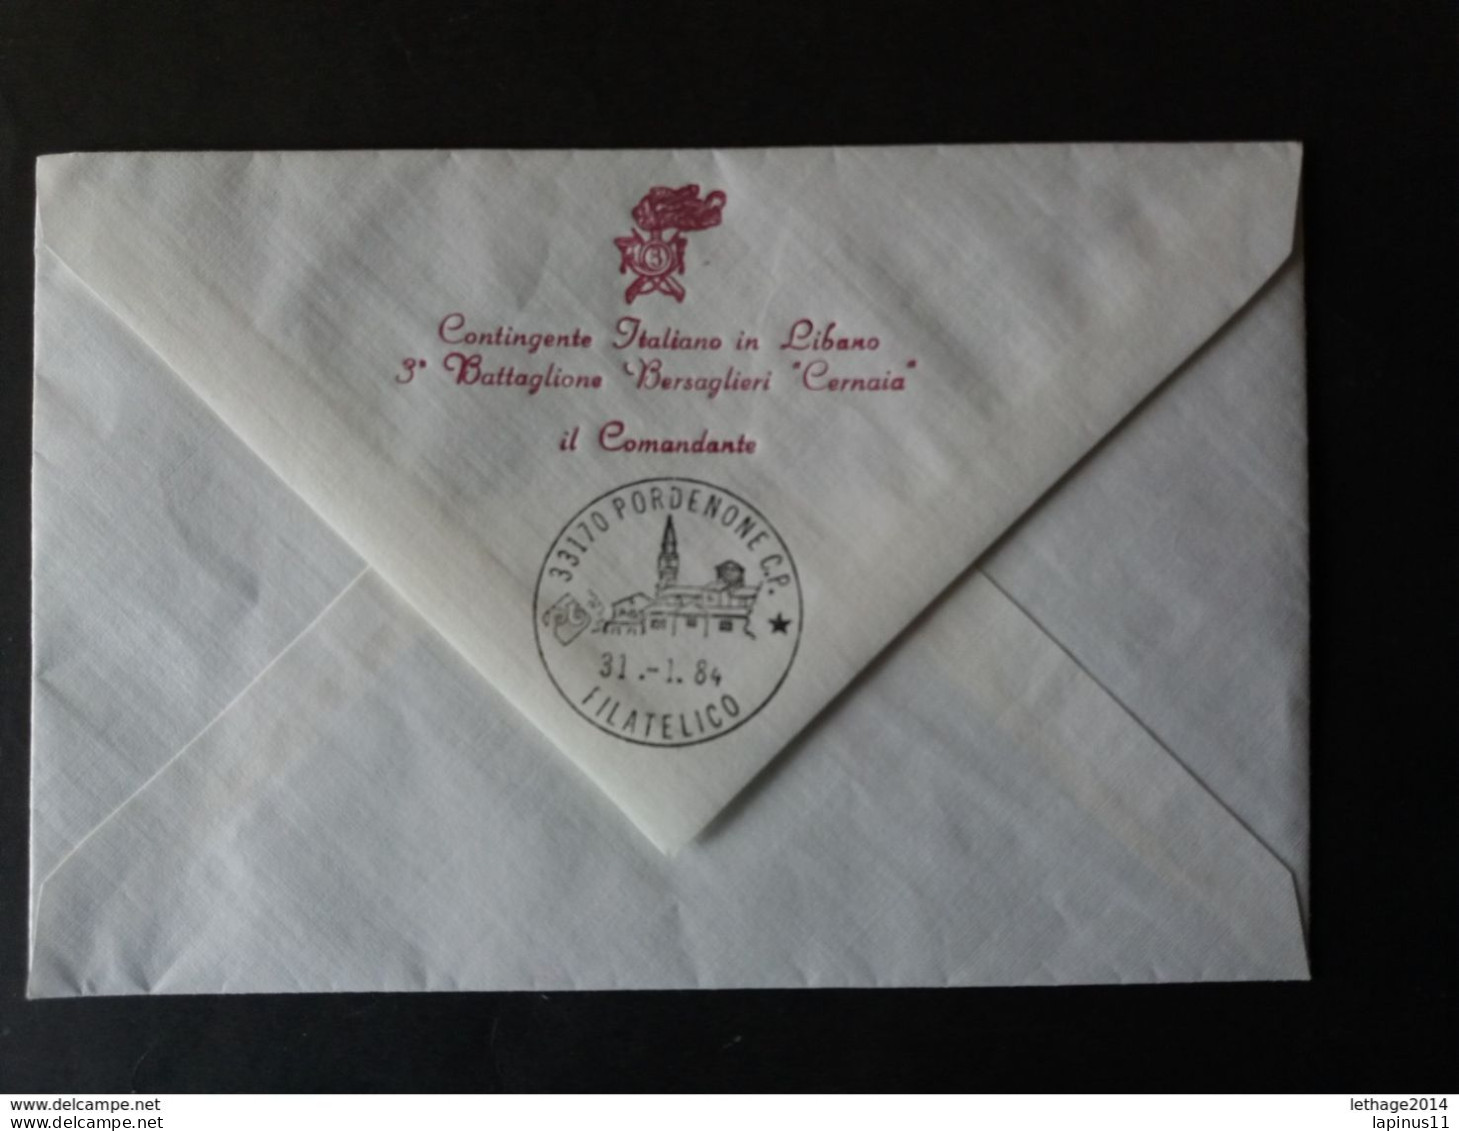 LEBANON LIBAN ITALY 1984 CONTINGENTE ITALIANO IN LIBANO 3 BATTAGLIONE BERSAGLIERI CERNAIA VERY RARE !! - Used Stamps